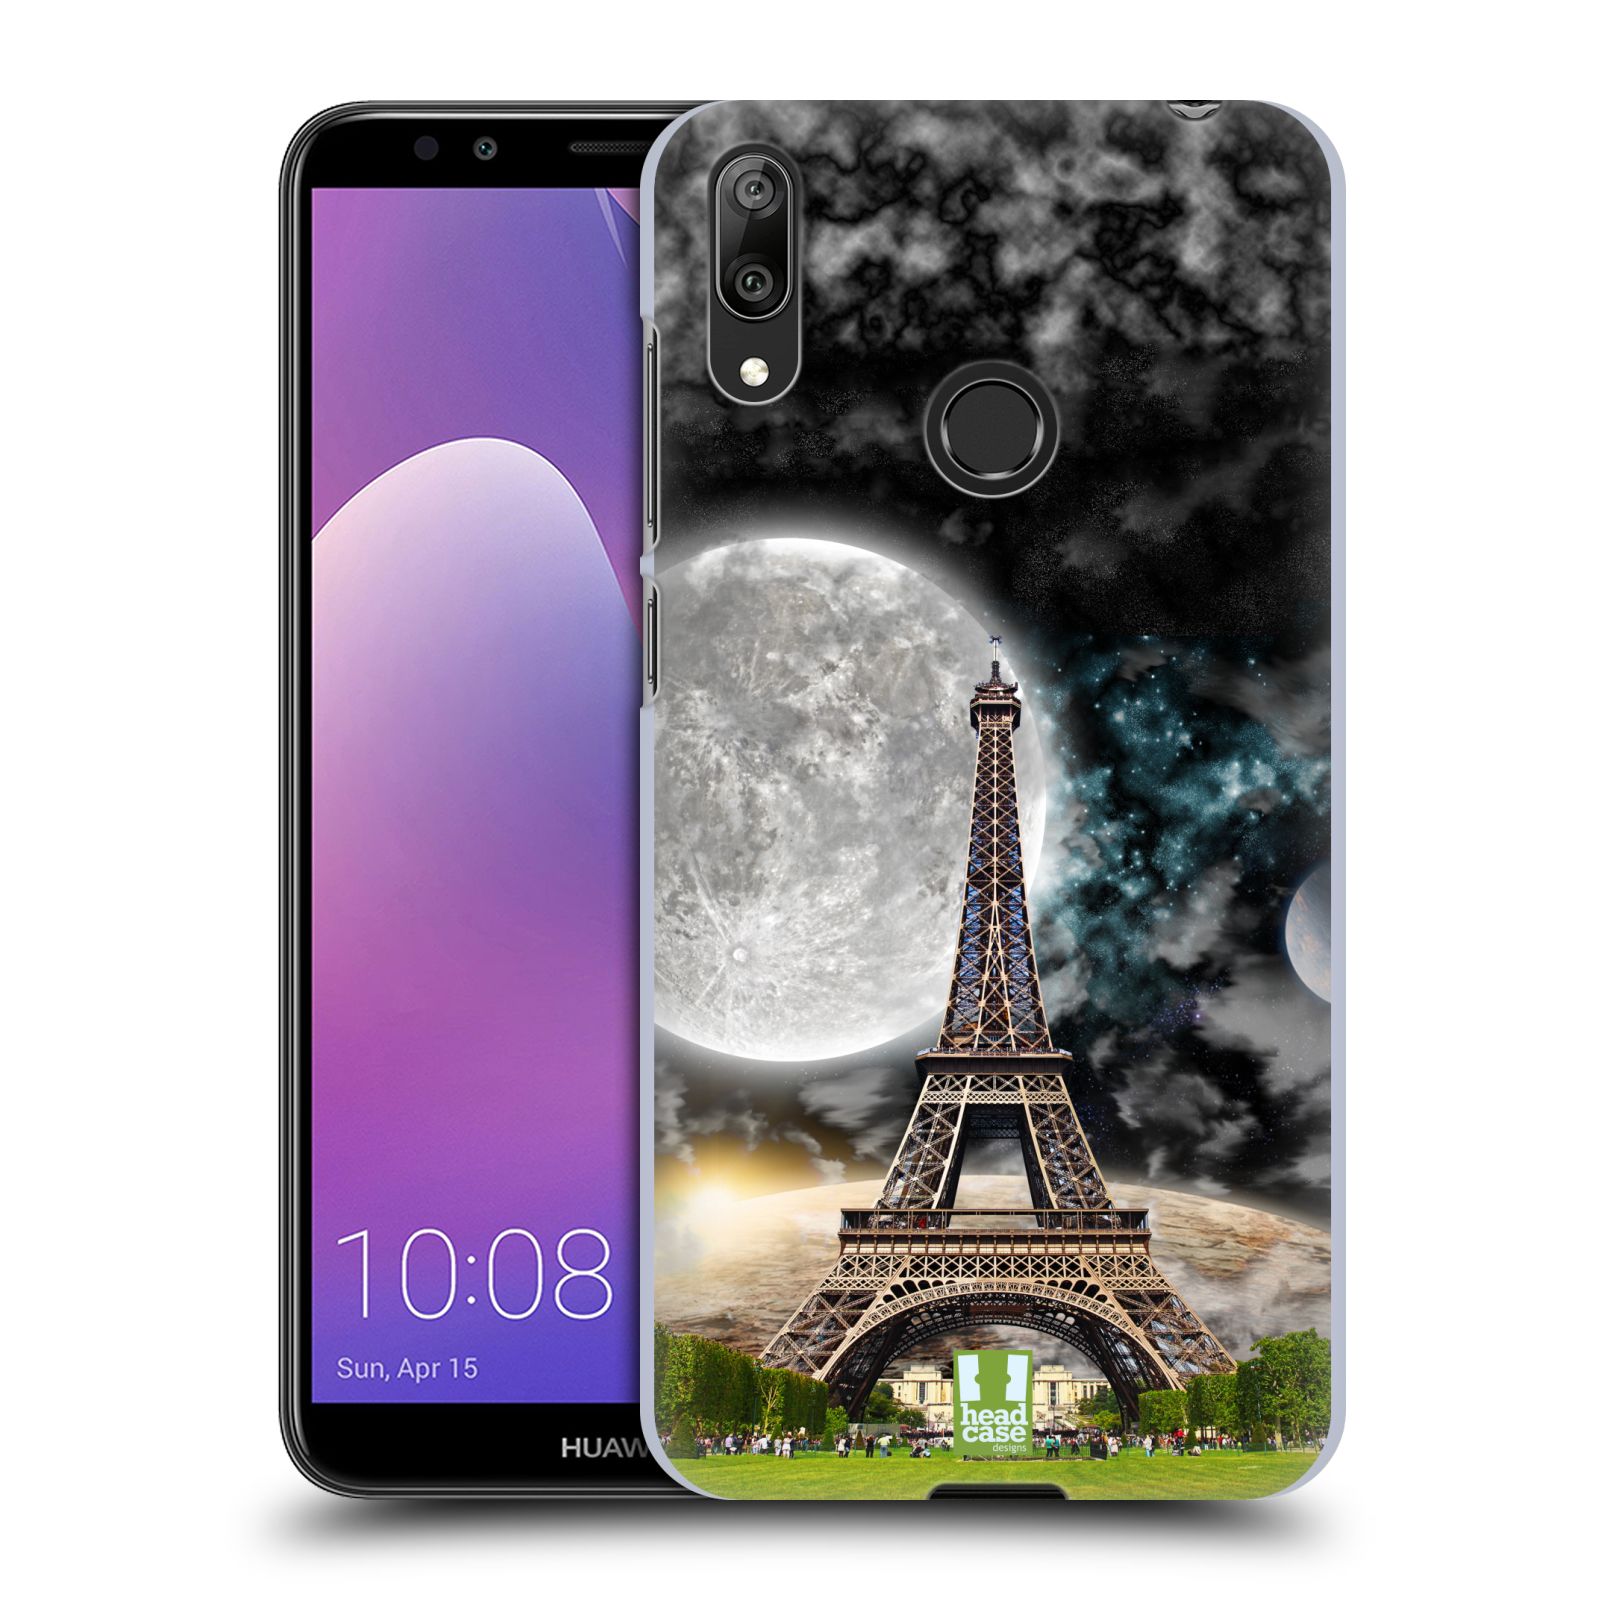 Plastové pouzdro na mobil Huawei Y7 (2019) - Head Case - Měsíční aifelovka (Plastový kryt, pouzdro, obal na mobilní telefon Huawei Y7 2019 s motivem Měsíční aifelovka)